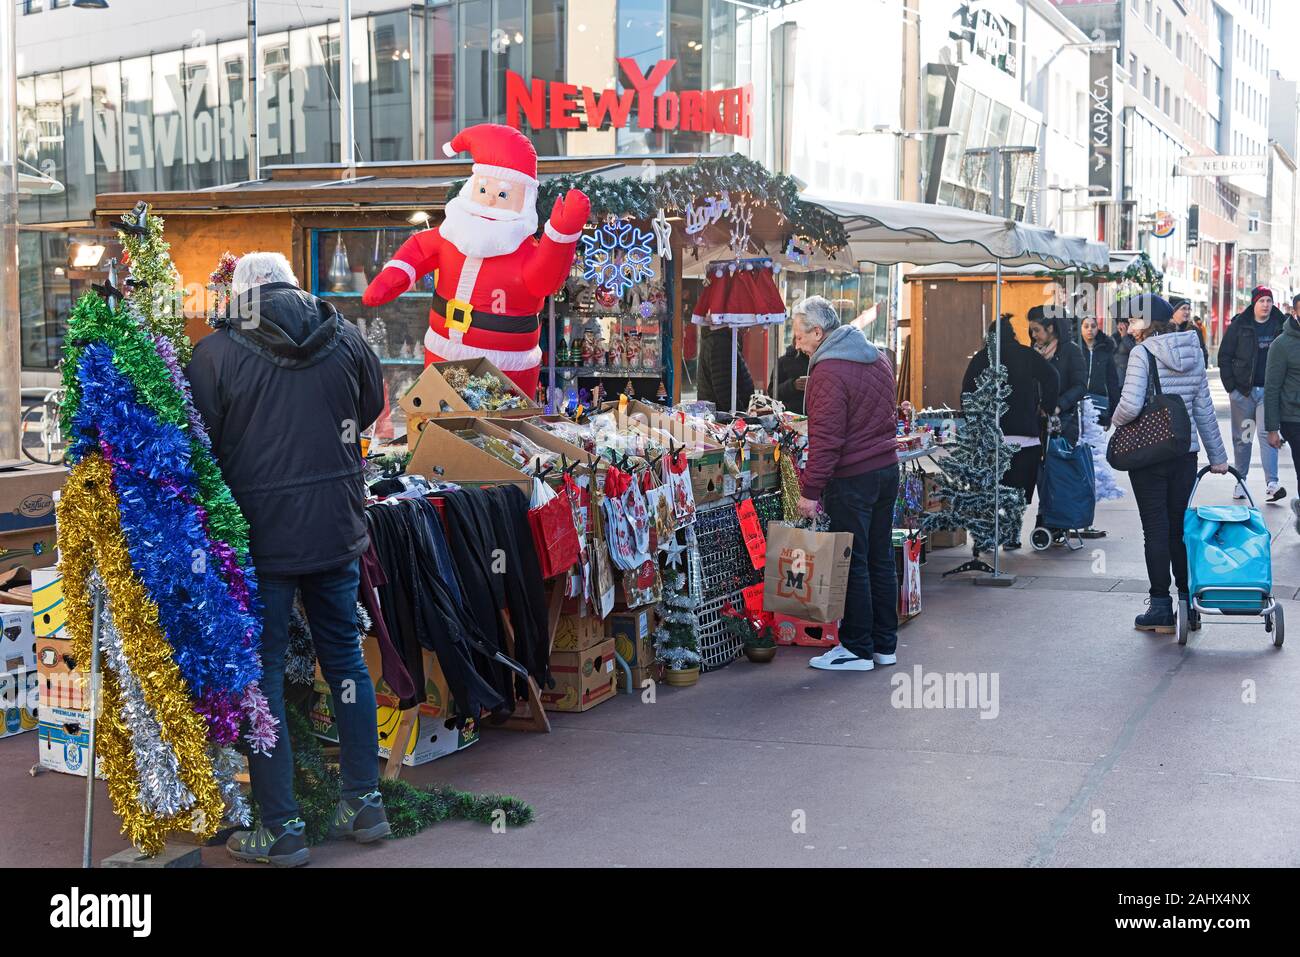 Am Nachmittag in der Weihnachtsmarkt, Keplerplatz, Wien, Österreich  Stockfotografie - Alamy